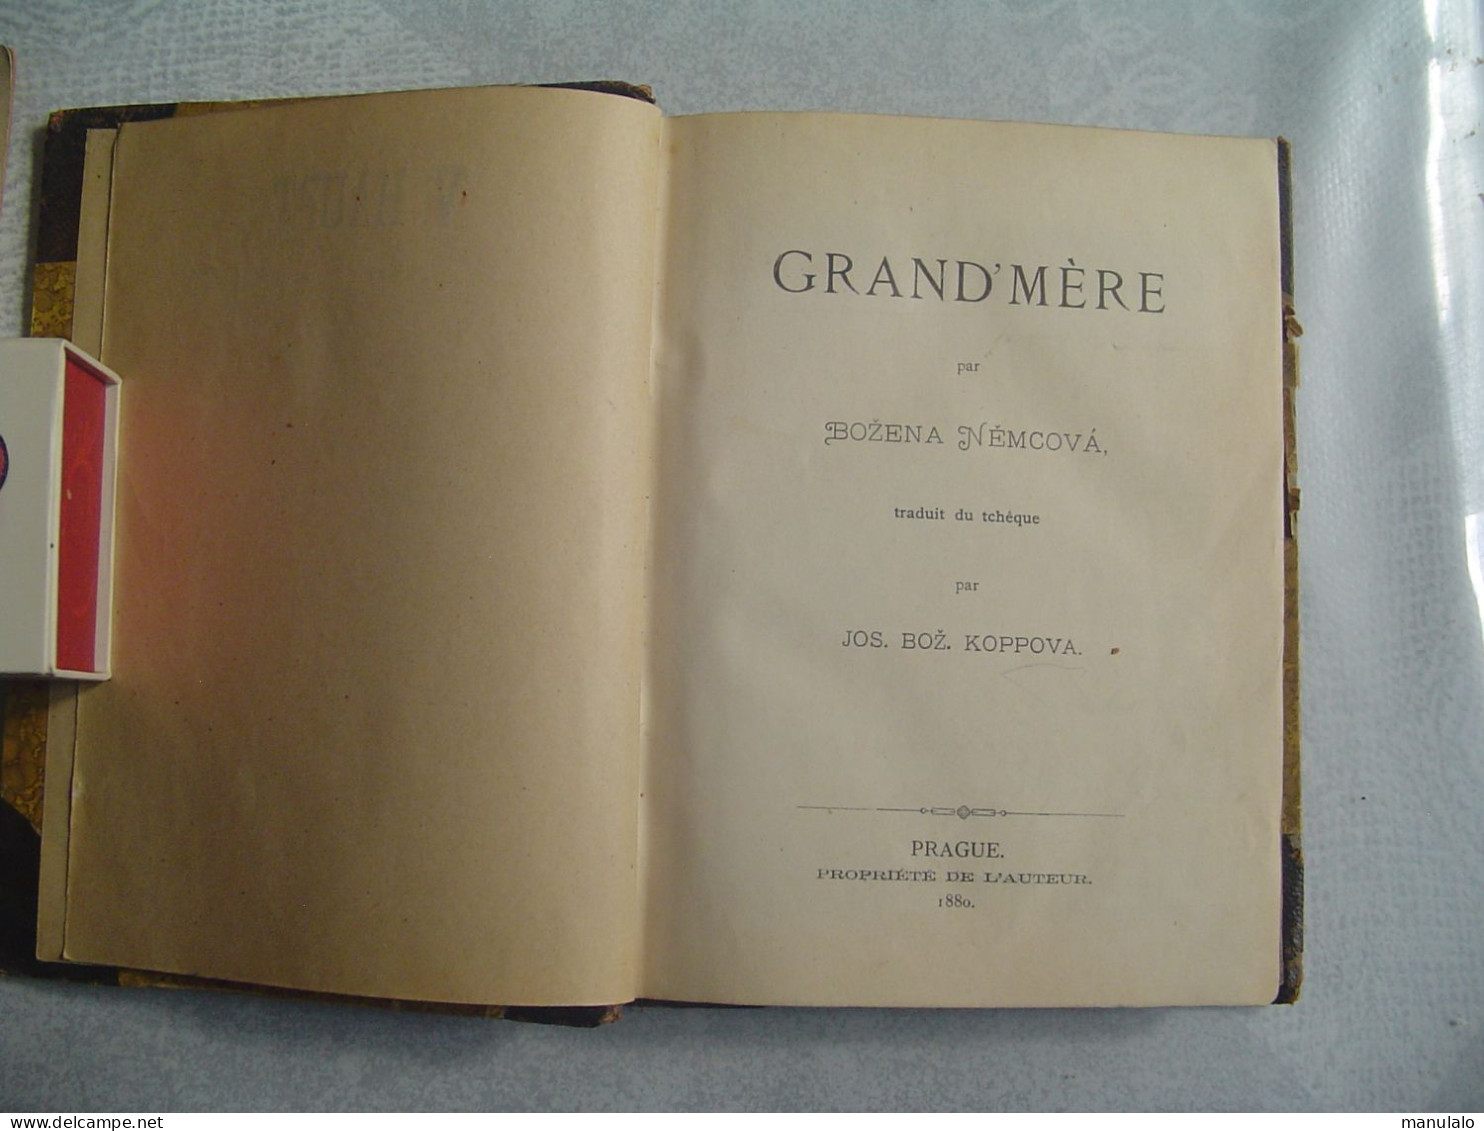 Livre De Bozena Nemcova, Grand'mère, Prague 1880, édition Grégr - 1801-1900